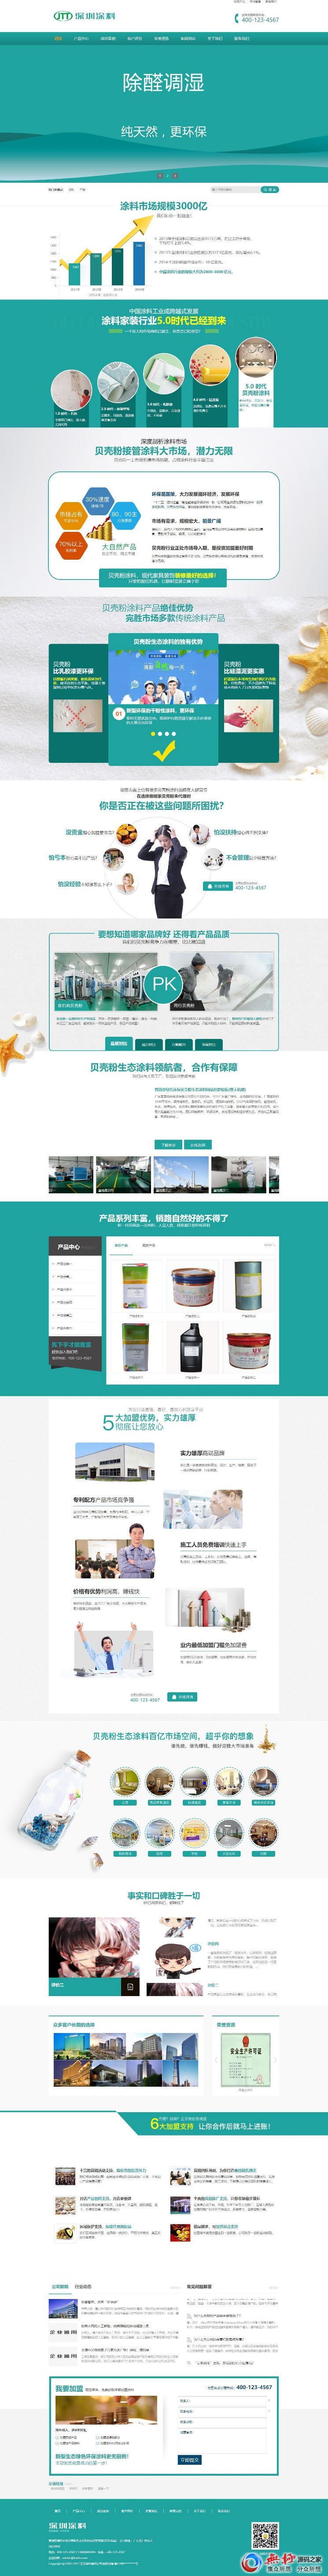 营销型绿色环保贝壳粉生态涂料油漆涂料环保产品网站源码